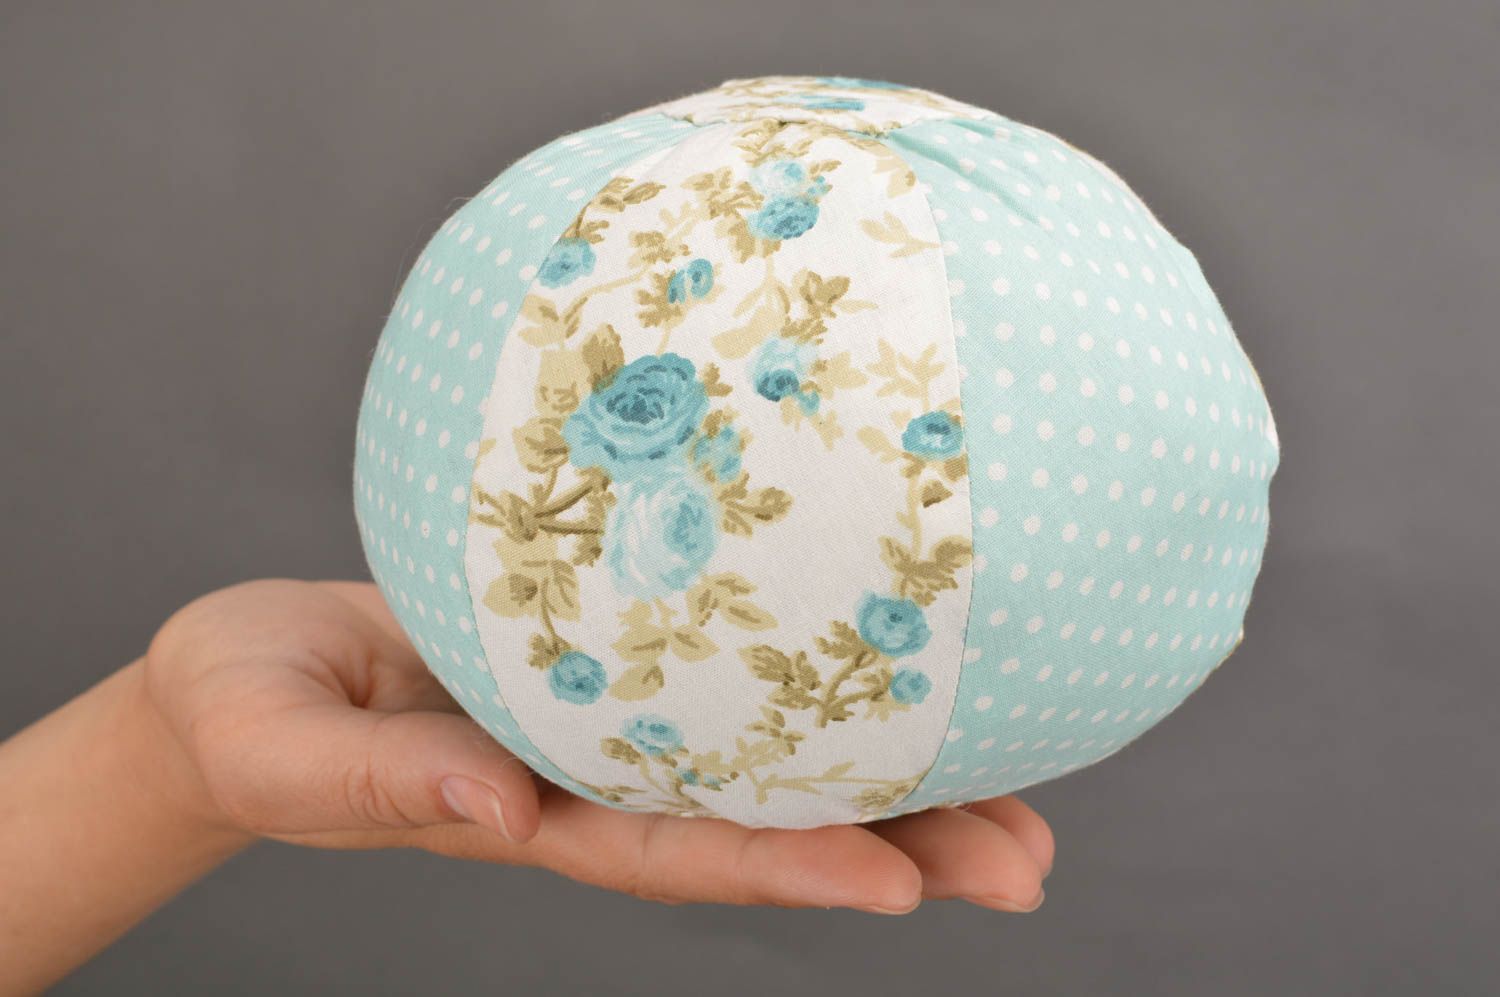 Мягкая игрушка в виде голубенького мяча из хлопковой ткани ручной работы фото 3